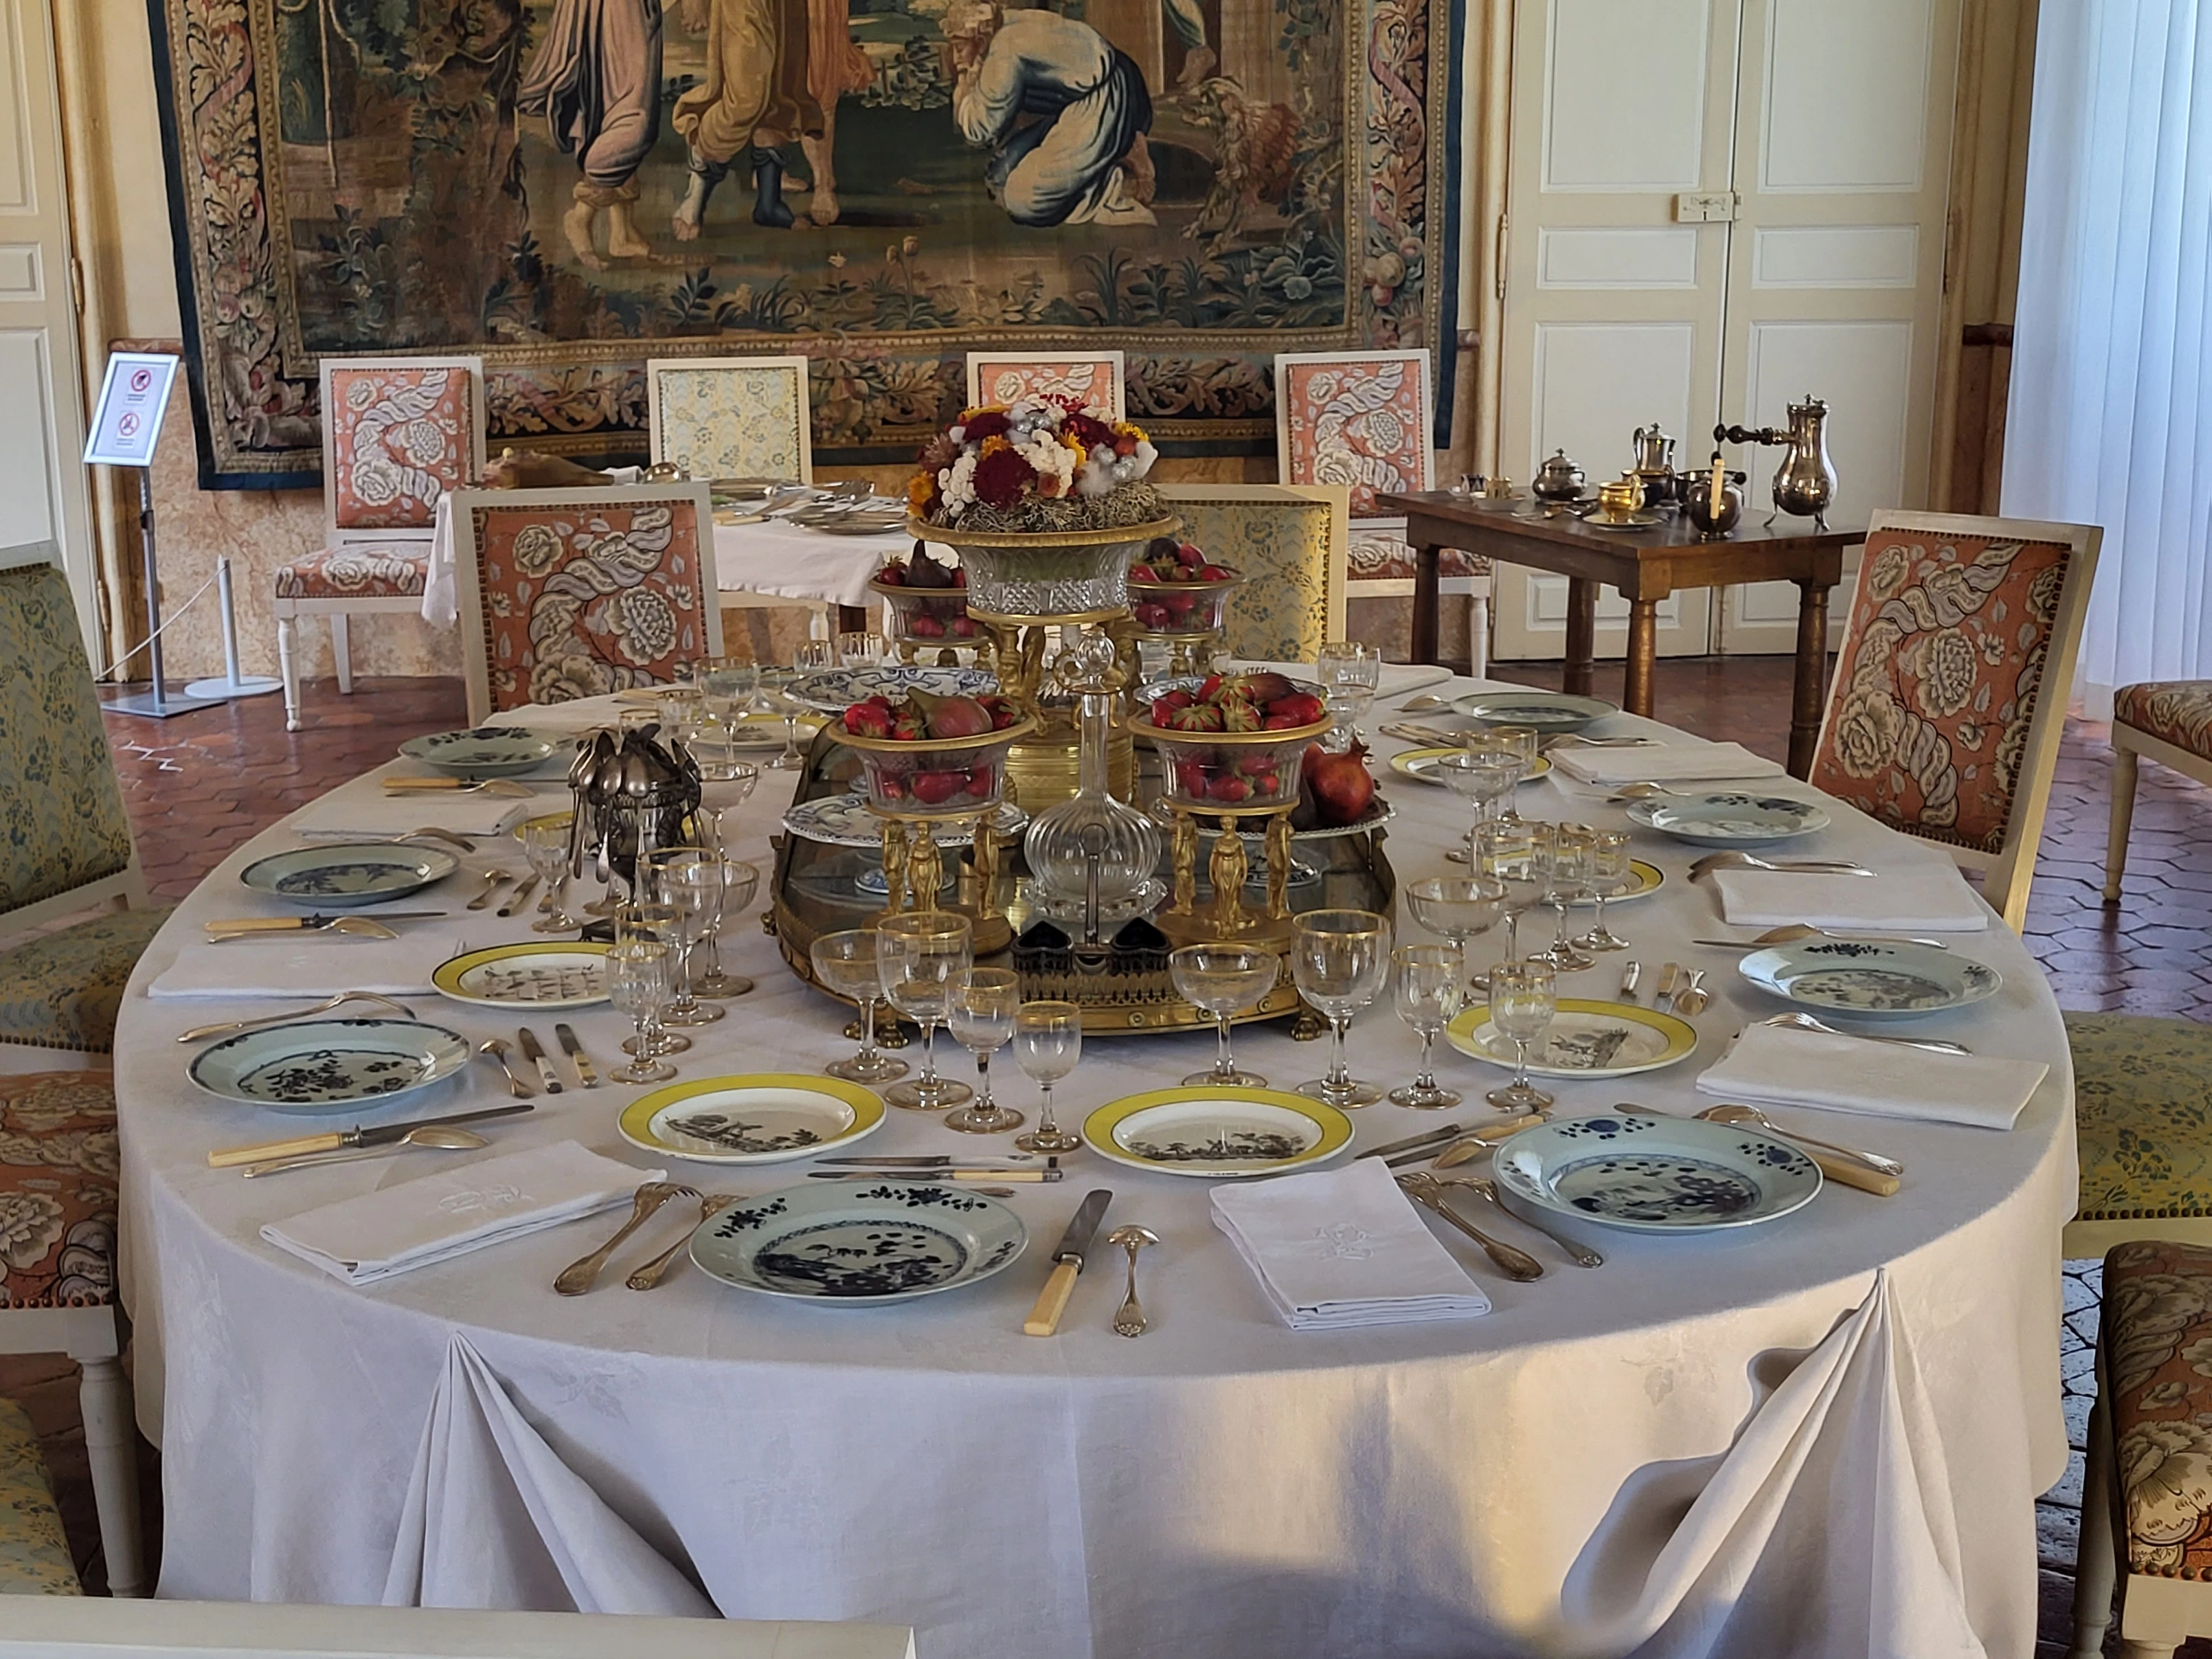 La salle a manger et la table dressée du Château de Carrouges. Photo choisie par monsieurdefrance.com : Jérôme Prod'homme